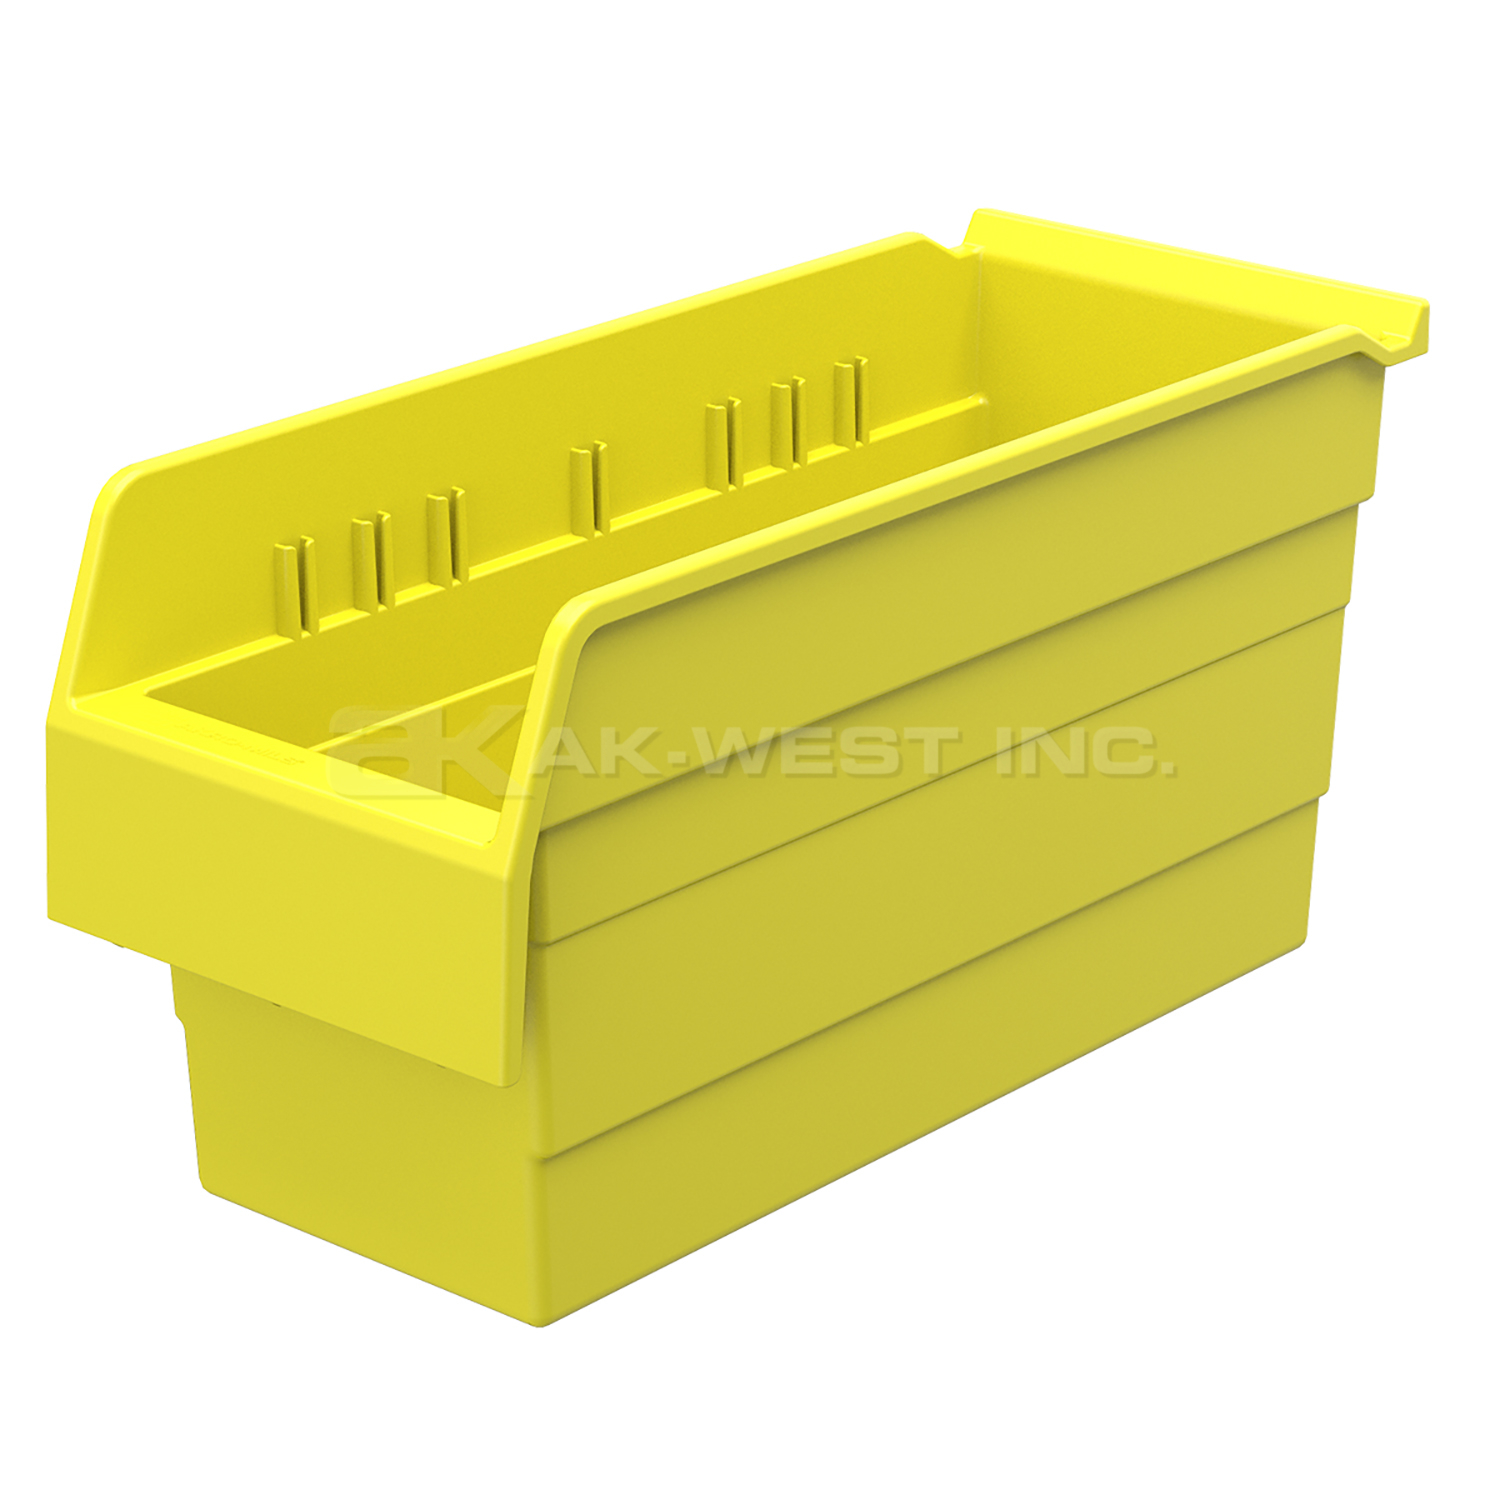 Yellow, 15-5/8" x 6-5/8" x 8" Shelf Bin (10 Per Carton)